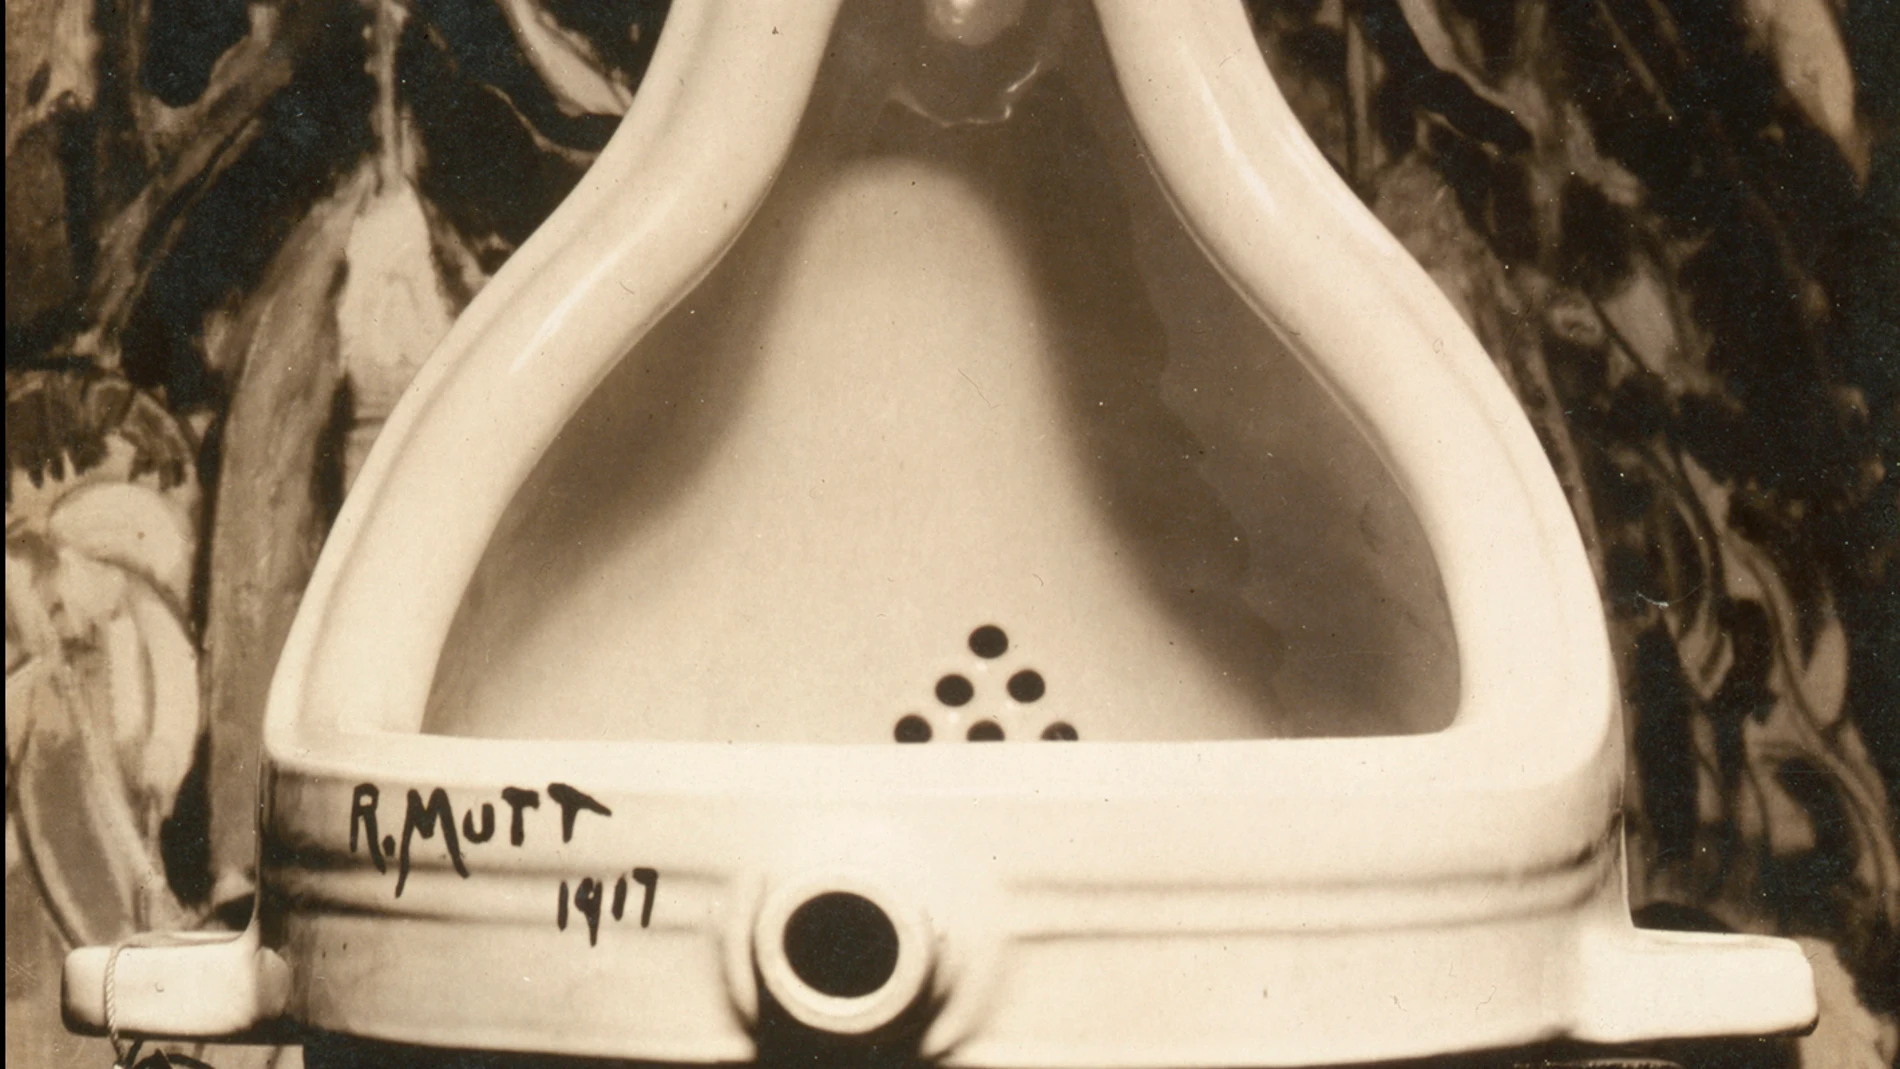 "El urinario" de Marcel Duchamp se ha convertido en un mito hoy en día